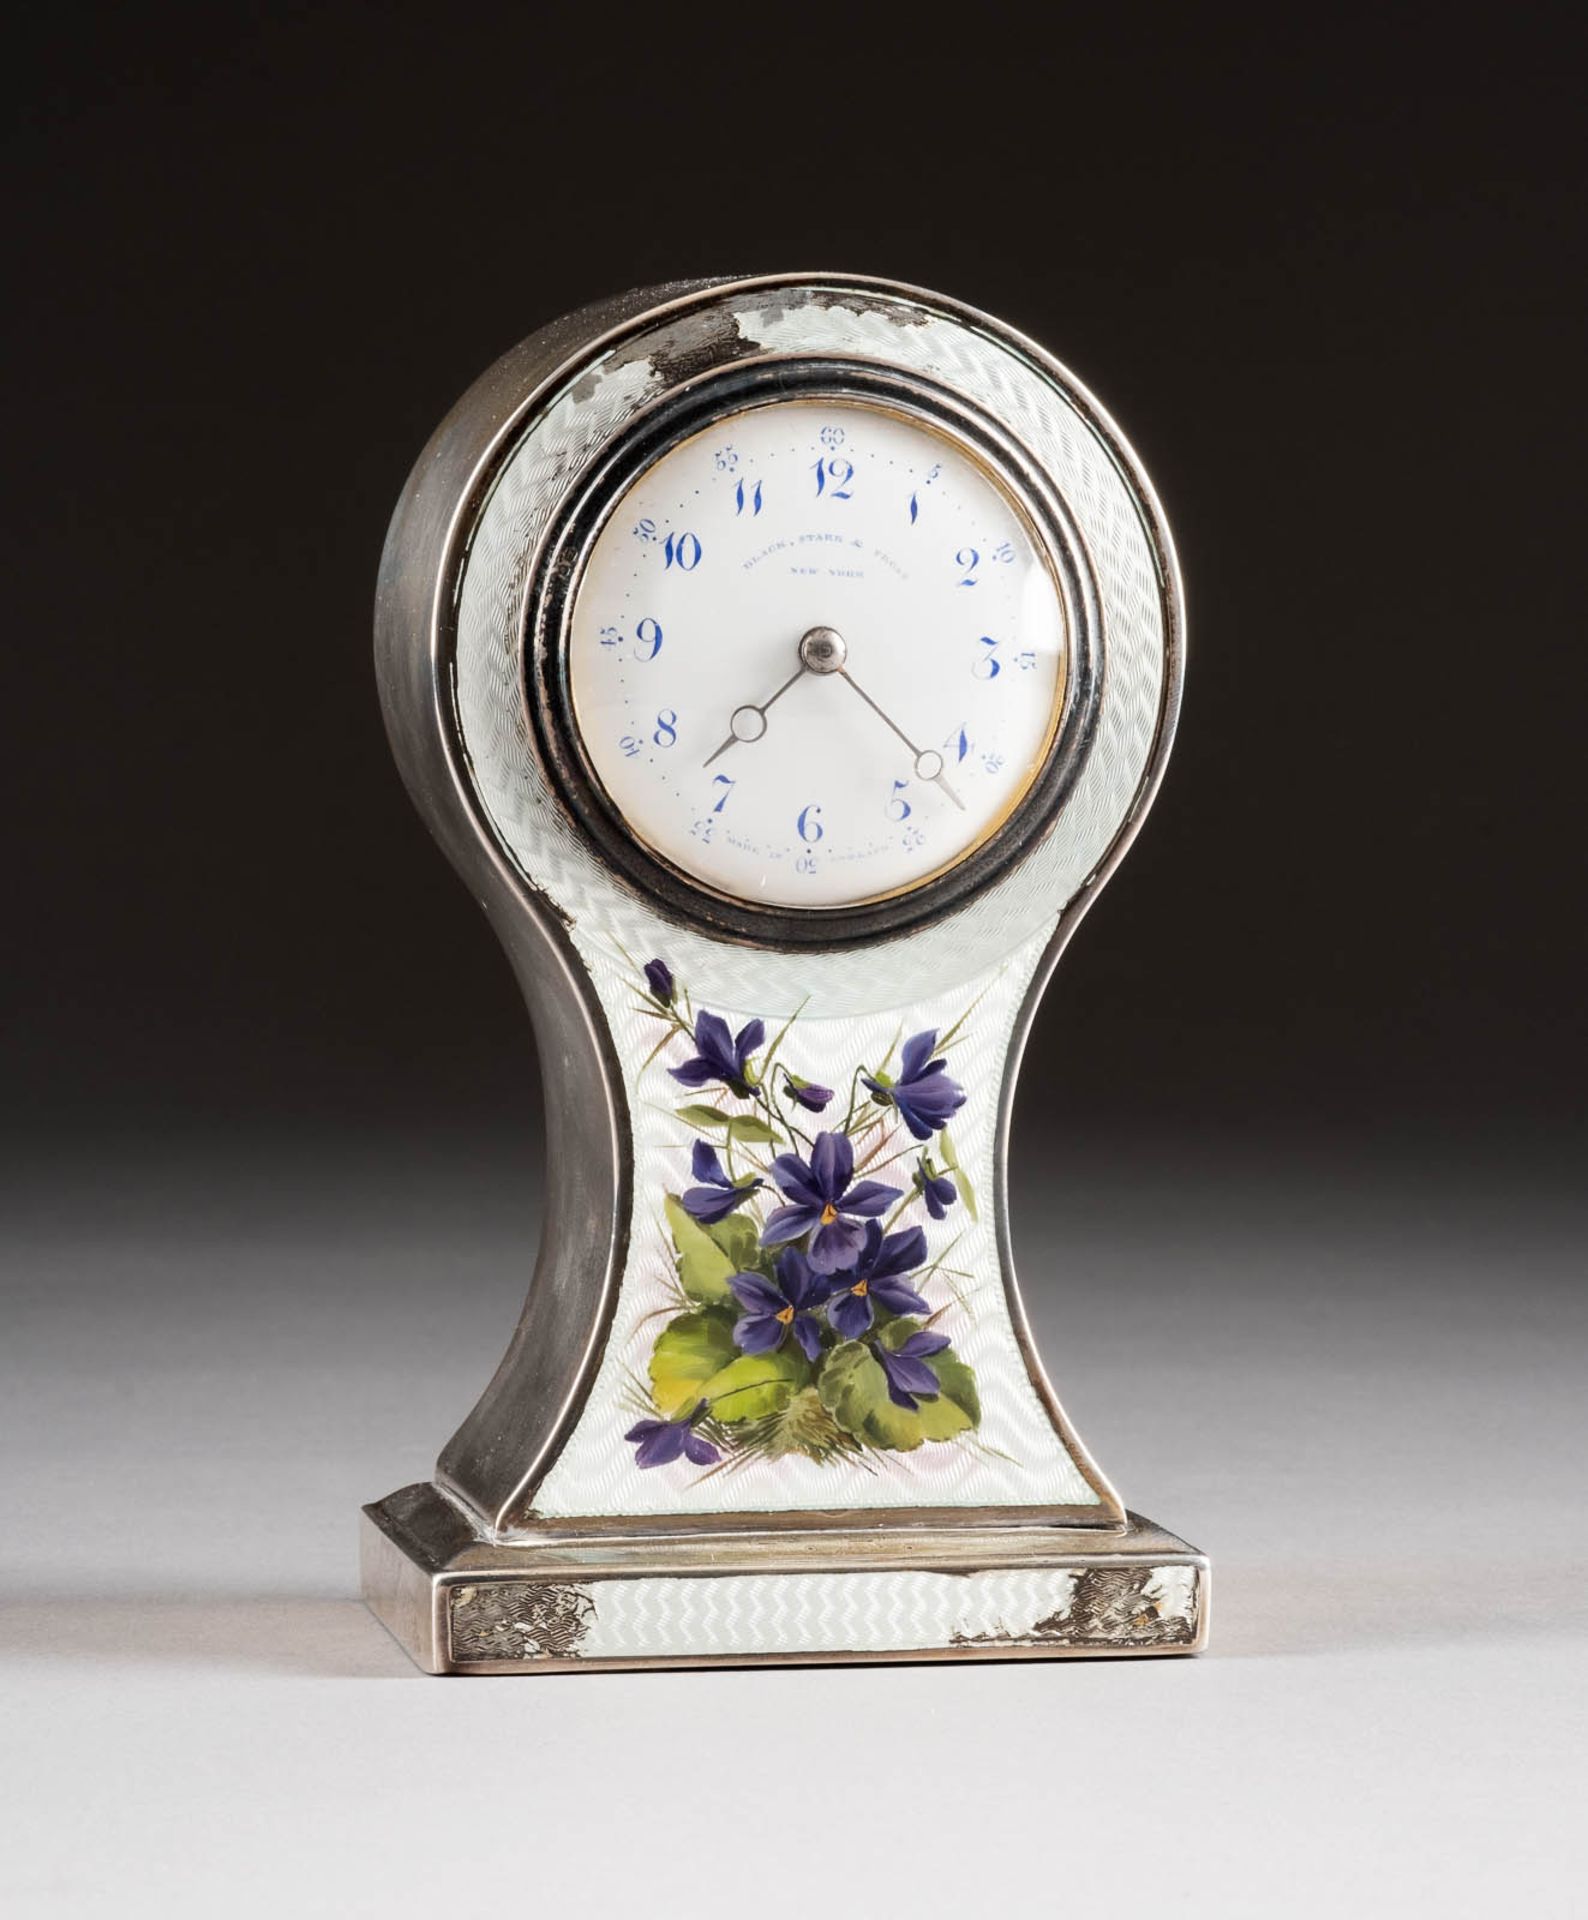 TISCHUHR MIT GUILLOCHE-EMAIL-DEKOR England, Birmingham, Douglas Clock Co Ltd, 1904 Silber, Email, - Bild 2 aus 2